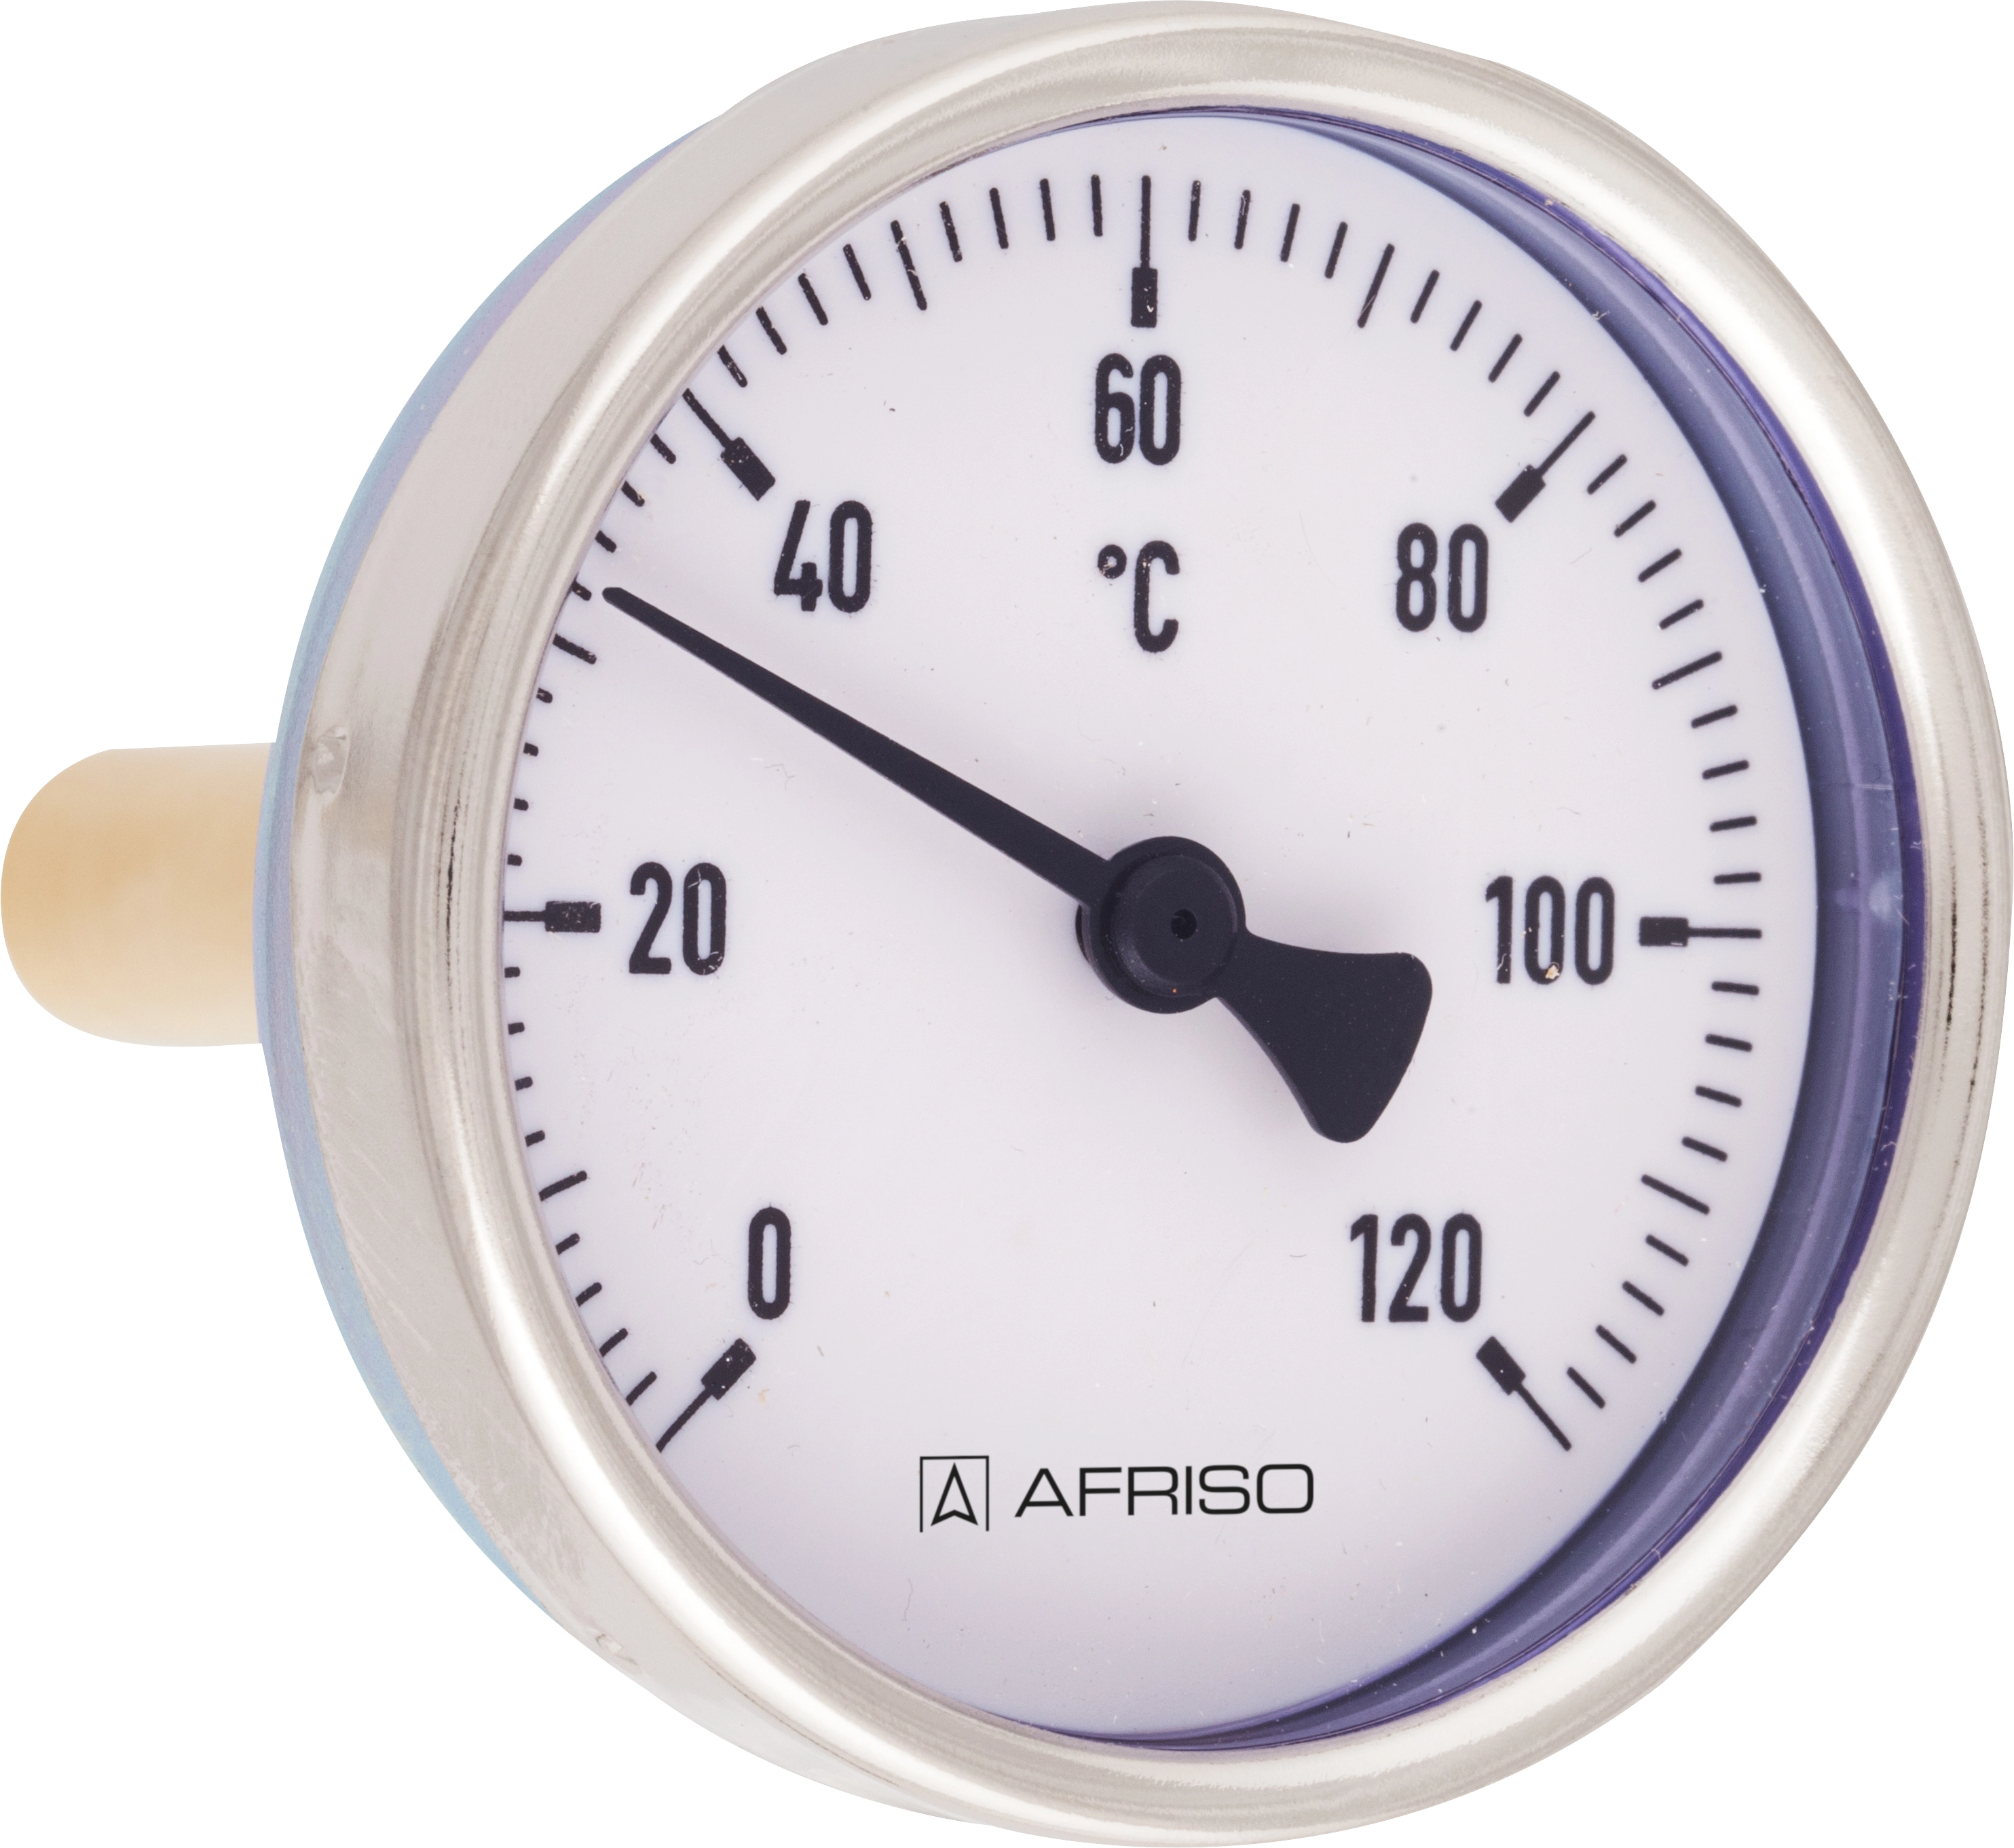 Termometr bimetaliczny BiTh 100 E, D312, fi100 mm, -20÷60°C, L 100 mm, ax, kl. 1